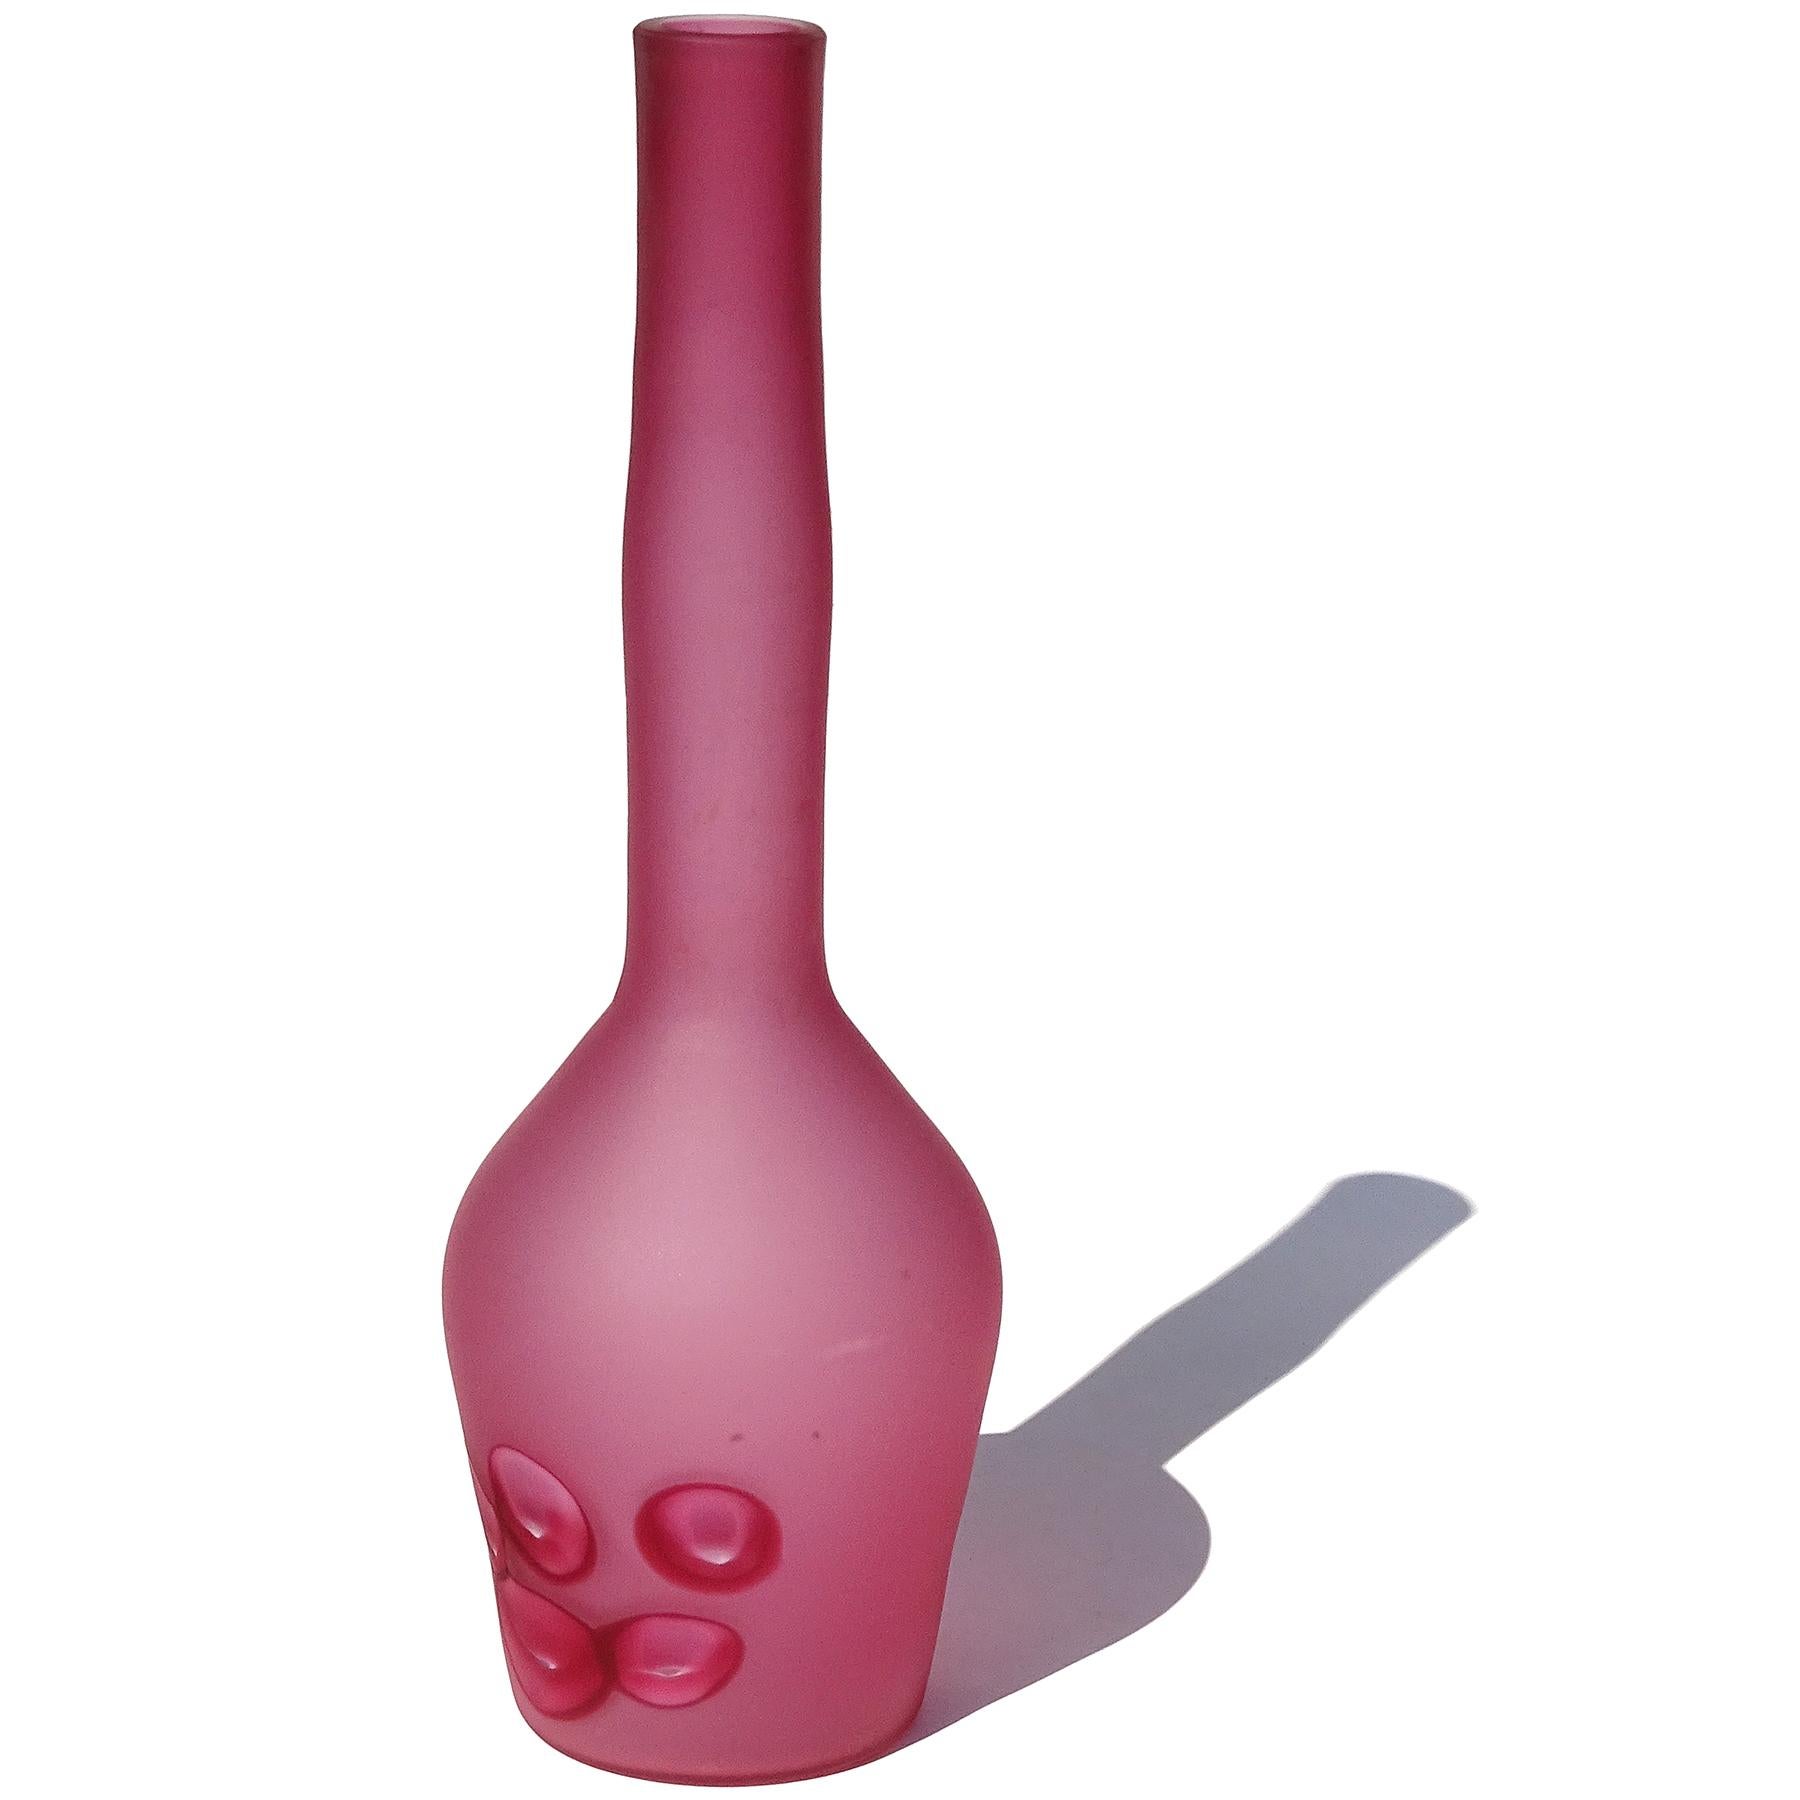 Schöne und seltene, Vintage Murano mundgeblasen dunkelrosa satinierte Oberfläche und geschliffenen Murrinen italienische Kunst Glasblume Vase / Flasche. Dokumentiert für den Designer Ermanno Toso, für die Firma Fratelli Toso. Die Vase ist im Design